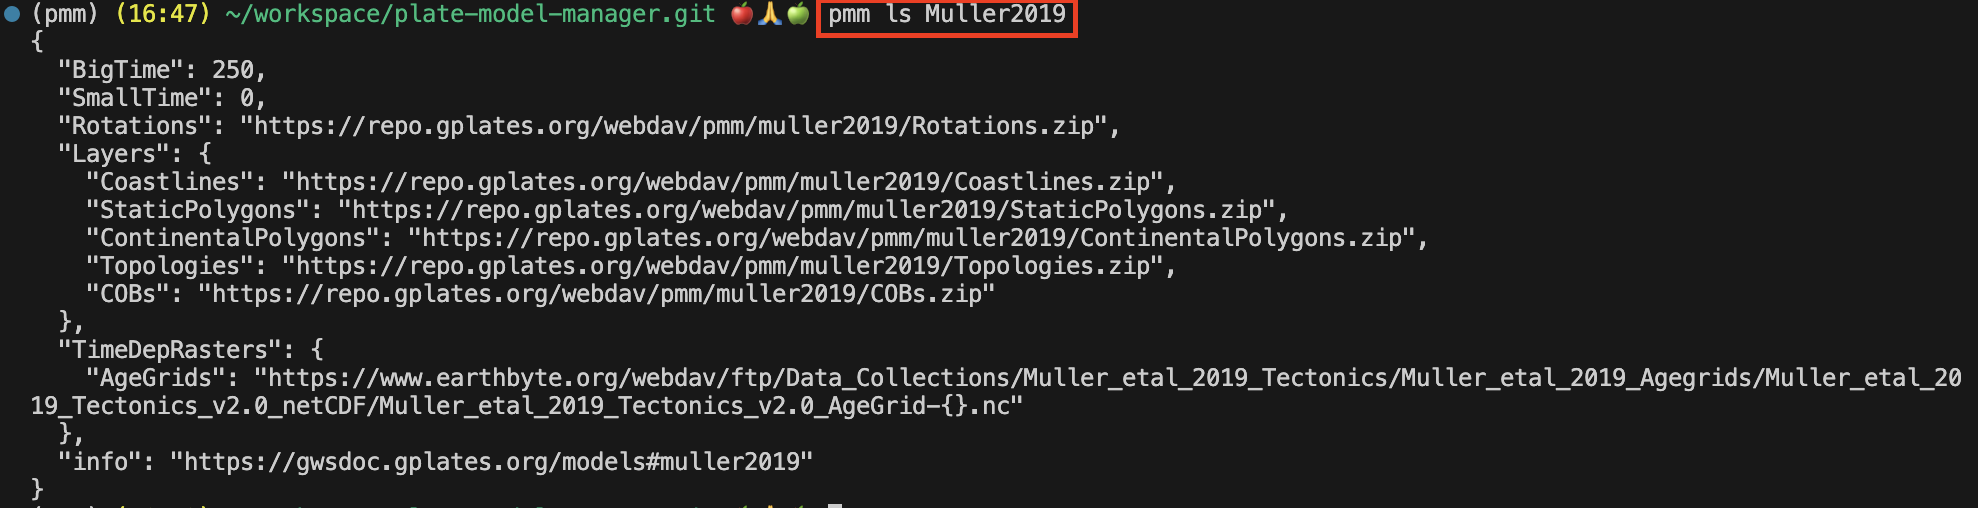 pmm ls model command screenshot